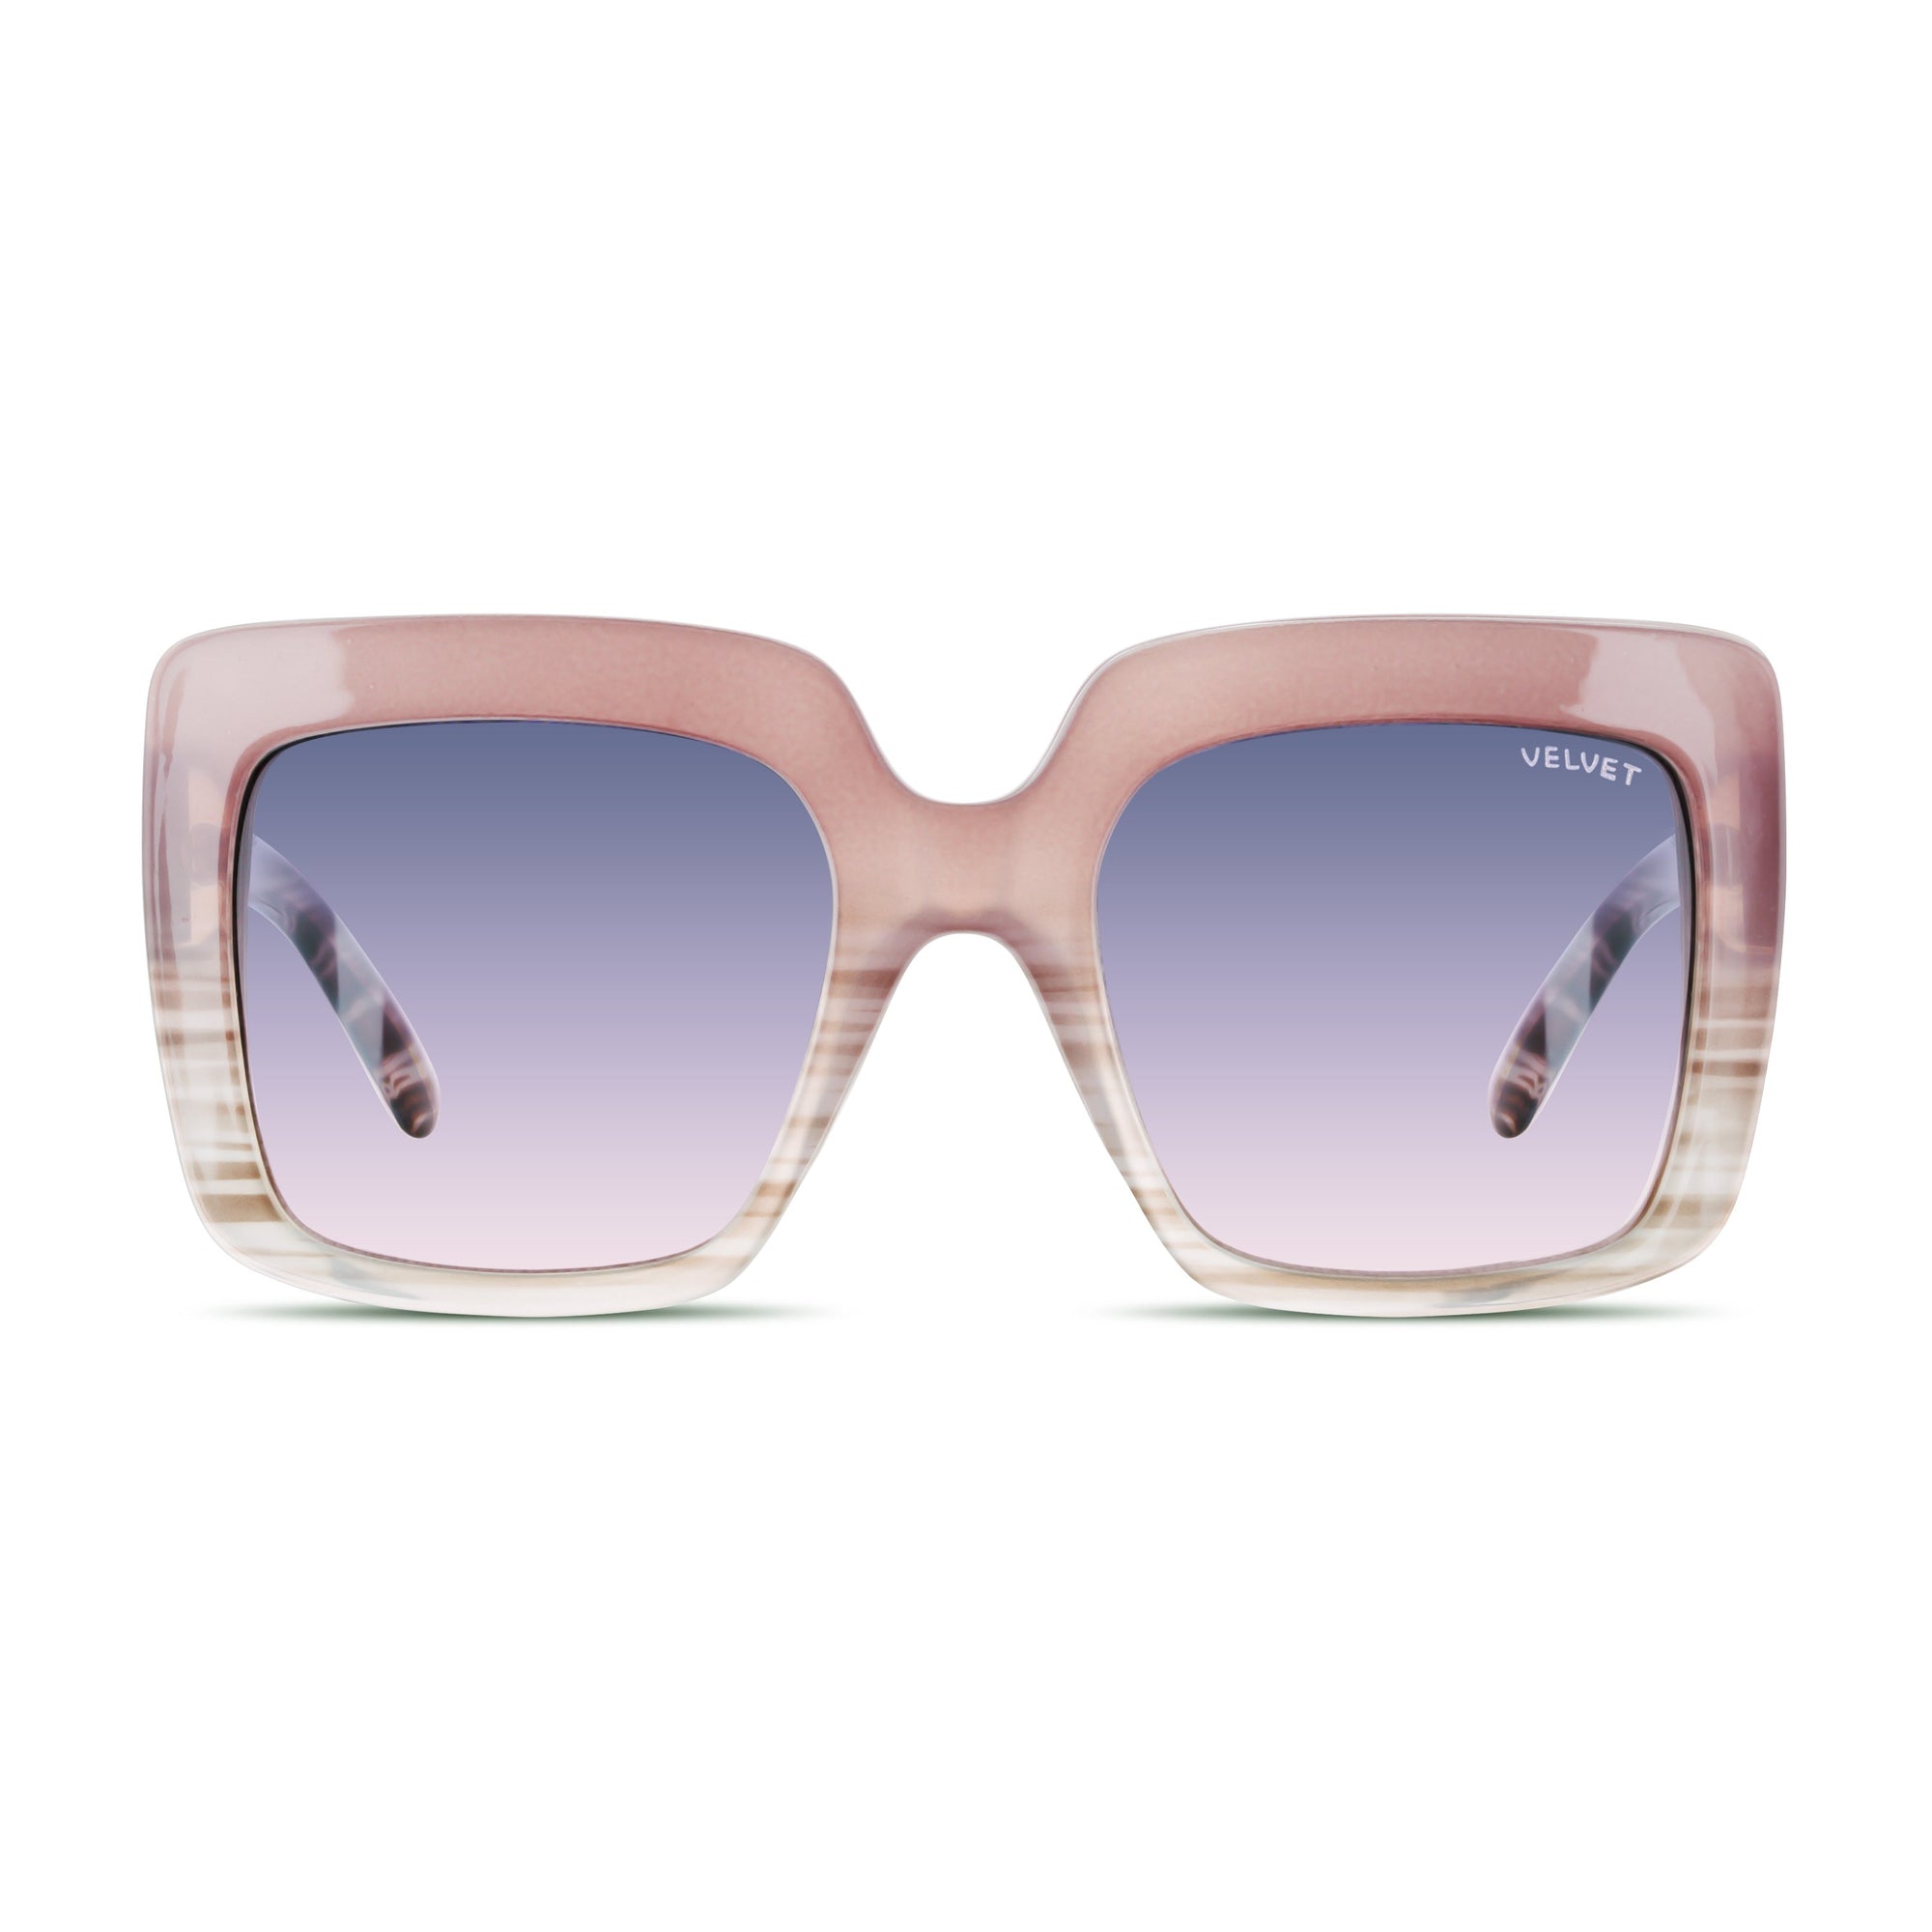 Gina Sunglasses Velvet Eyewear   